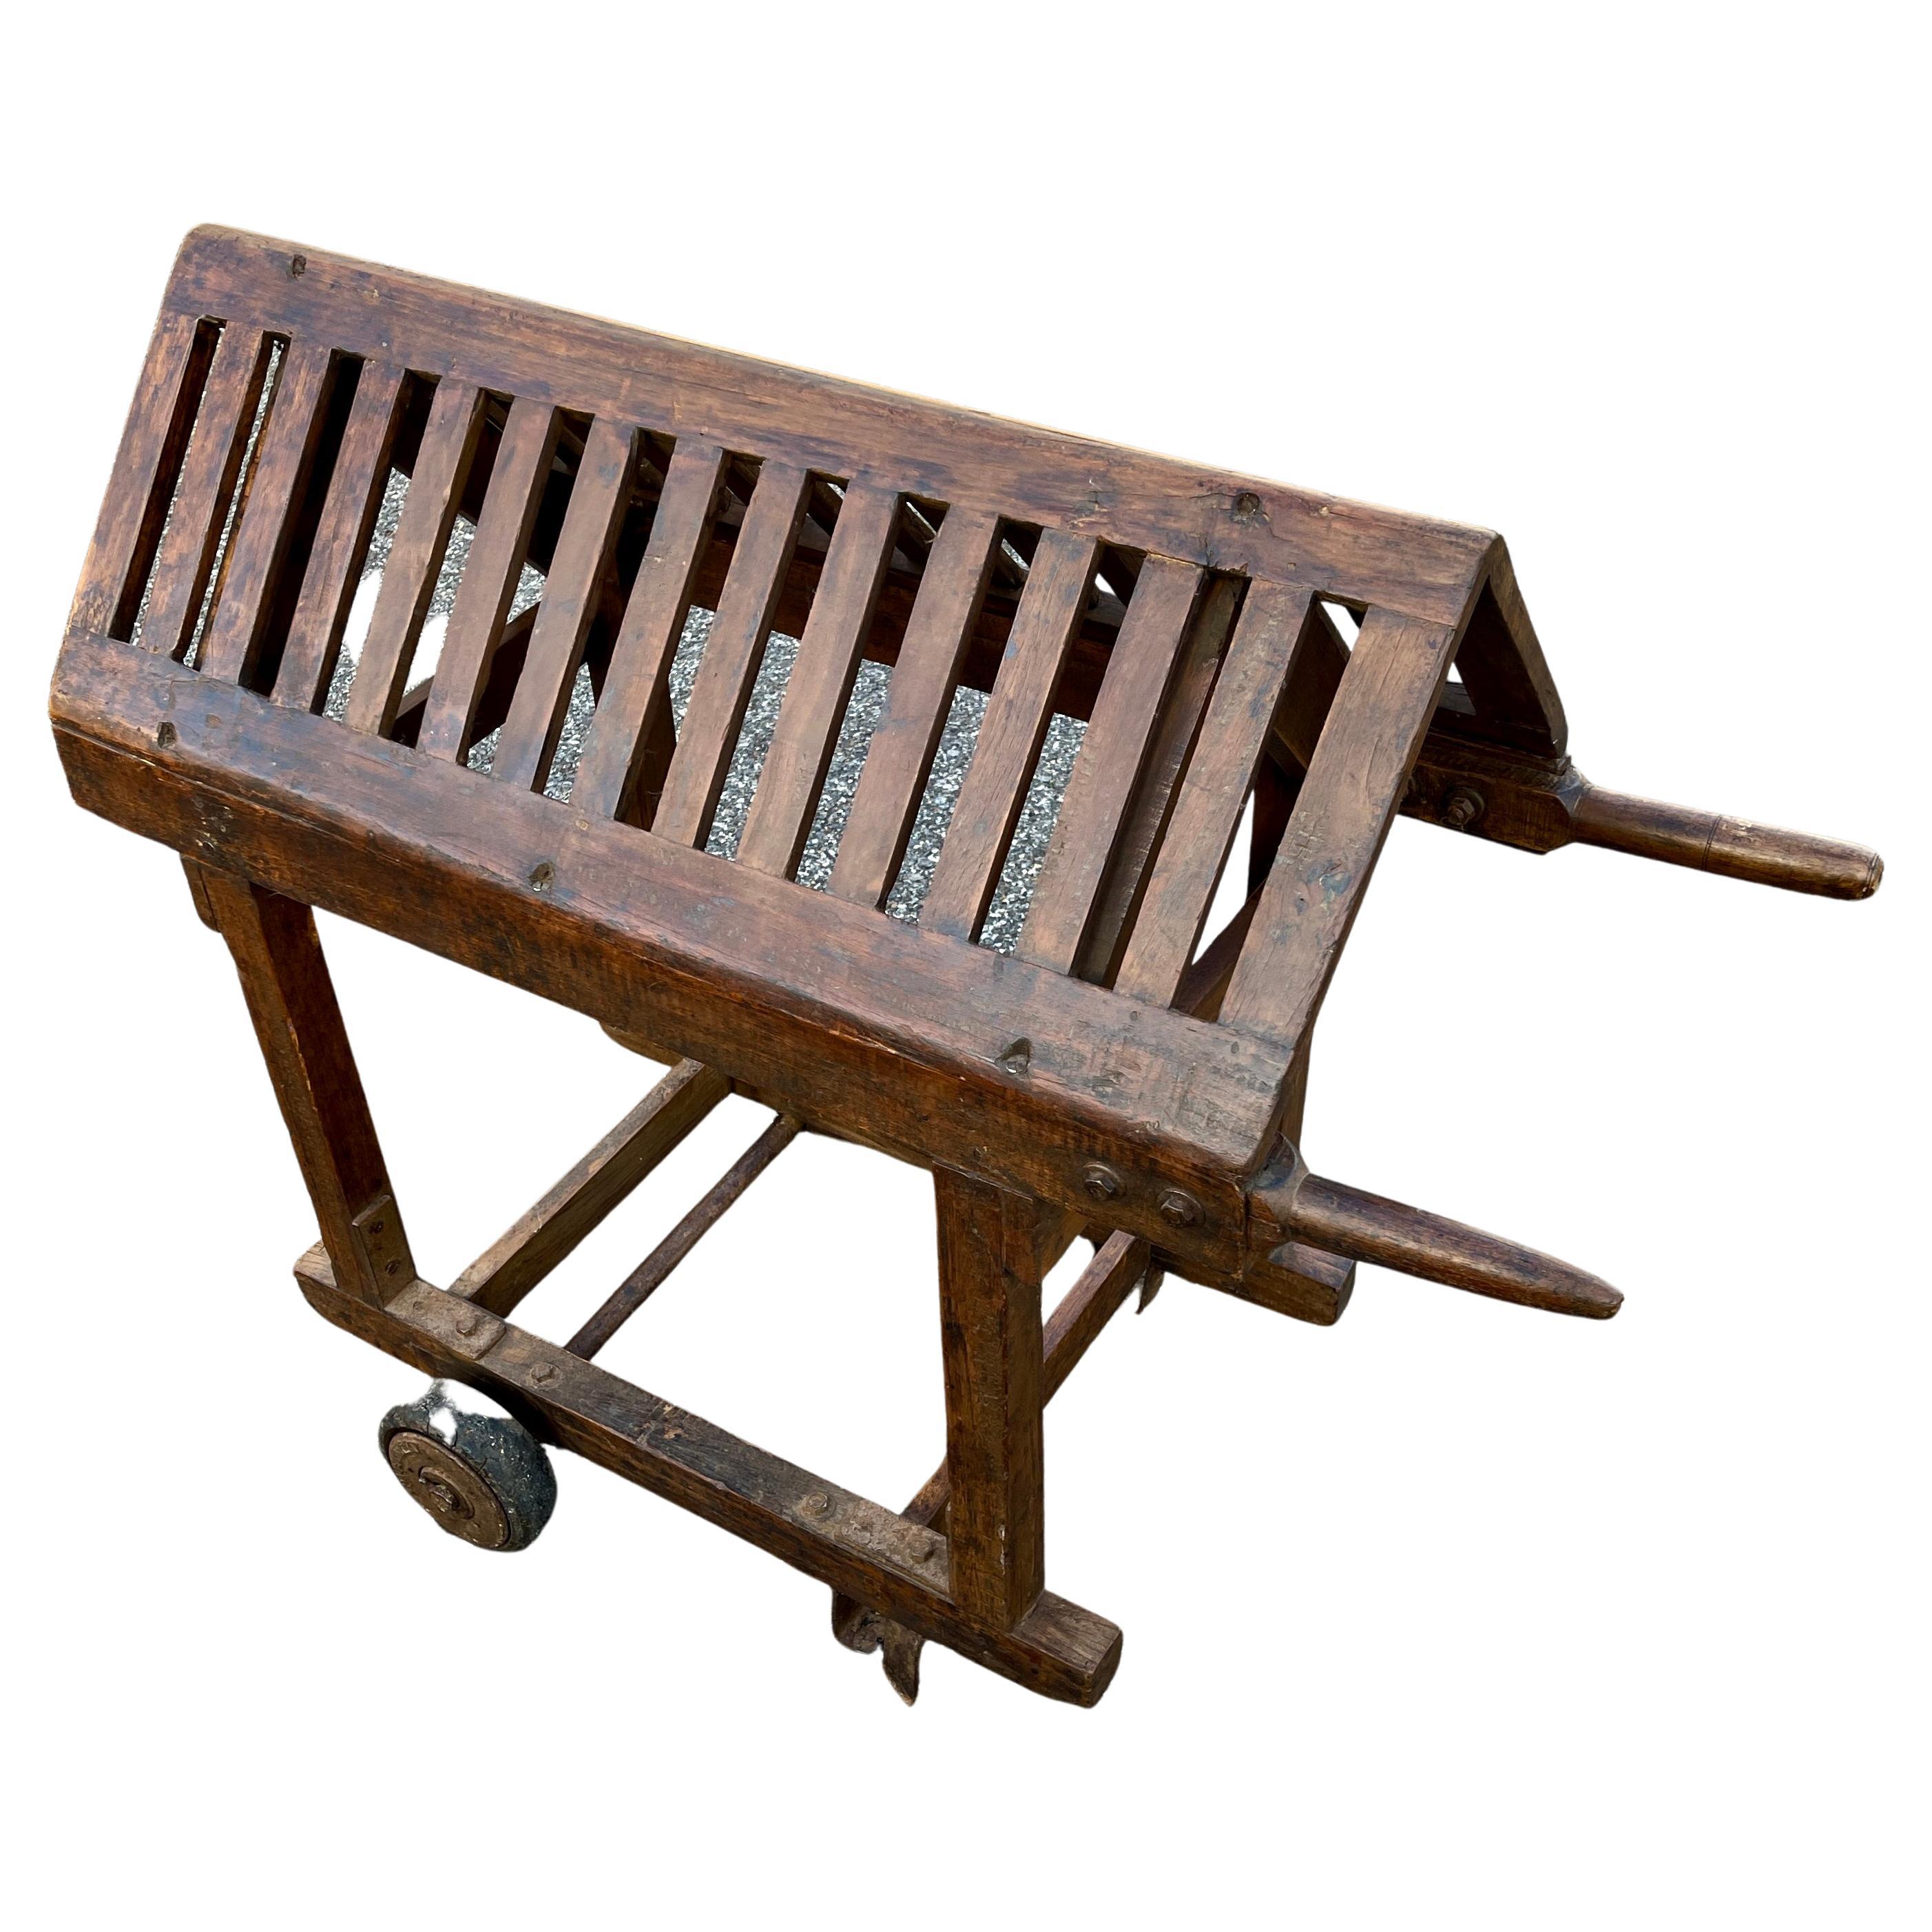 Vintage wooden saddle rack or blanket stand.